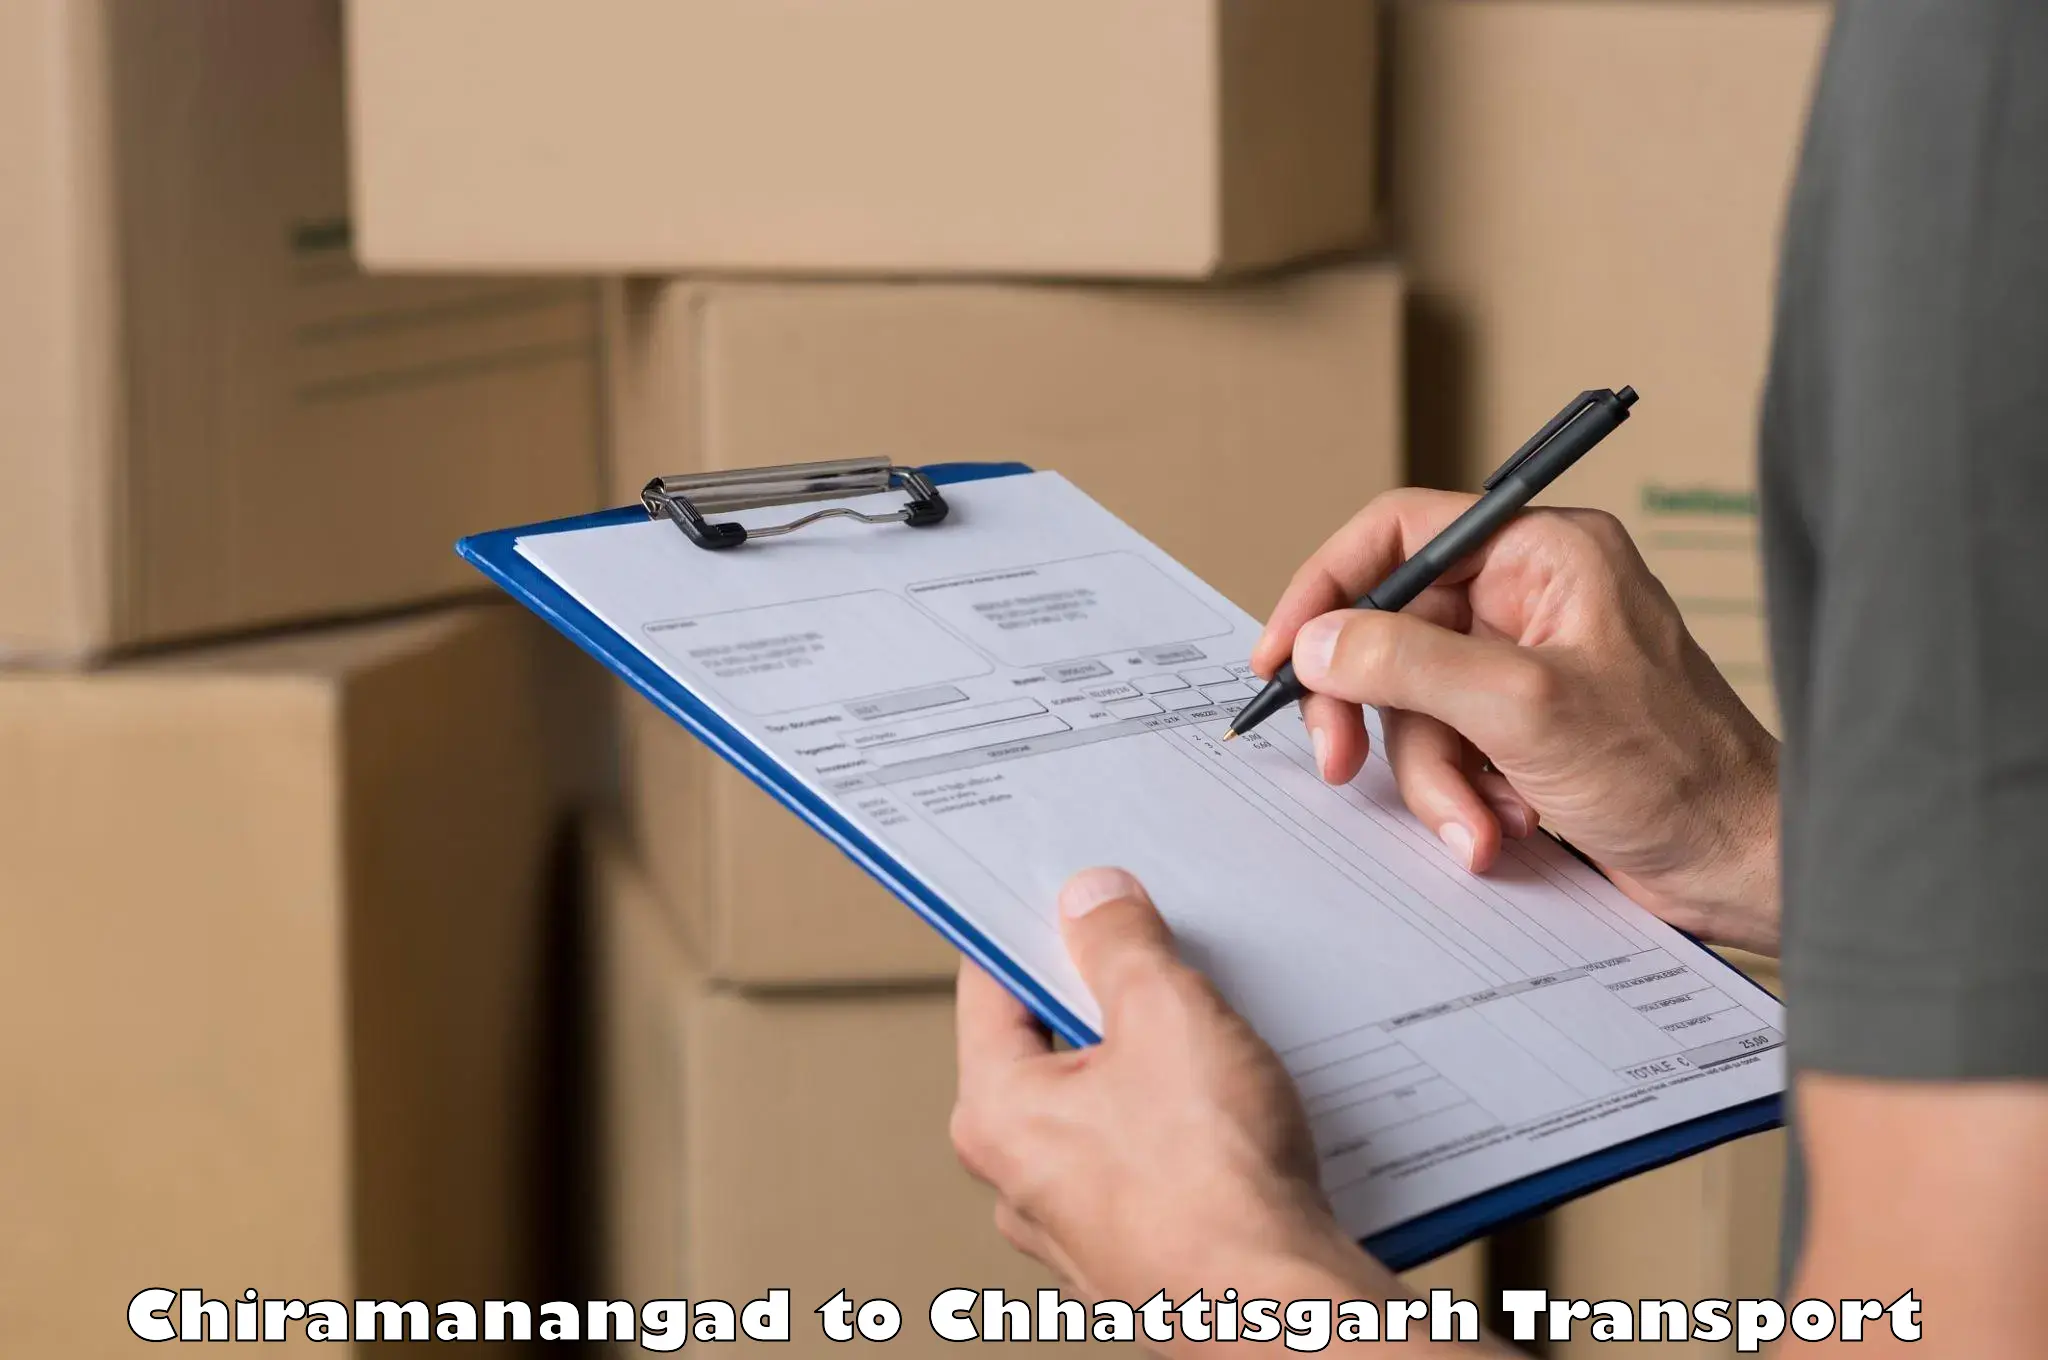 Daily transport service Chiramanangad to Janjgir Champa